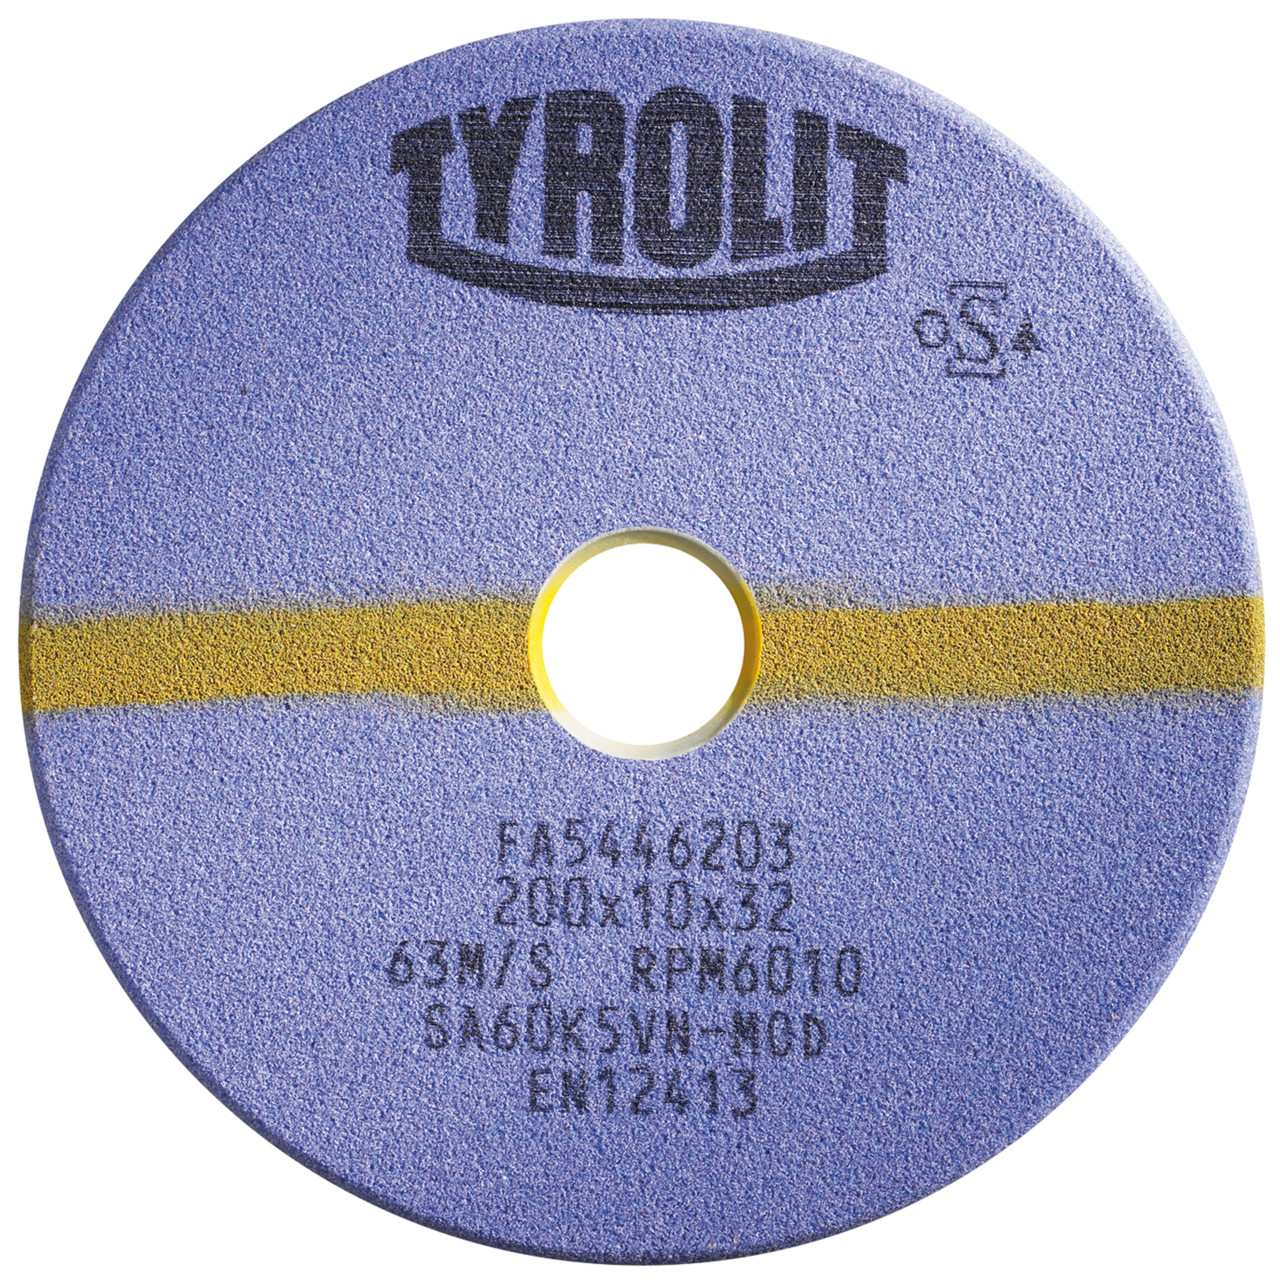 TYROLIT Schleifwerkzeuge für Sägeschärfautomaten DxTxH 200x3x32 Für Kreissägen und stellitierte Band- und Gattersägen, Form: 1C, Art. 922860